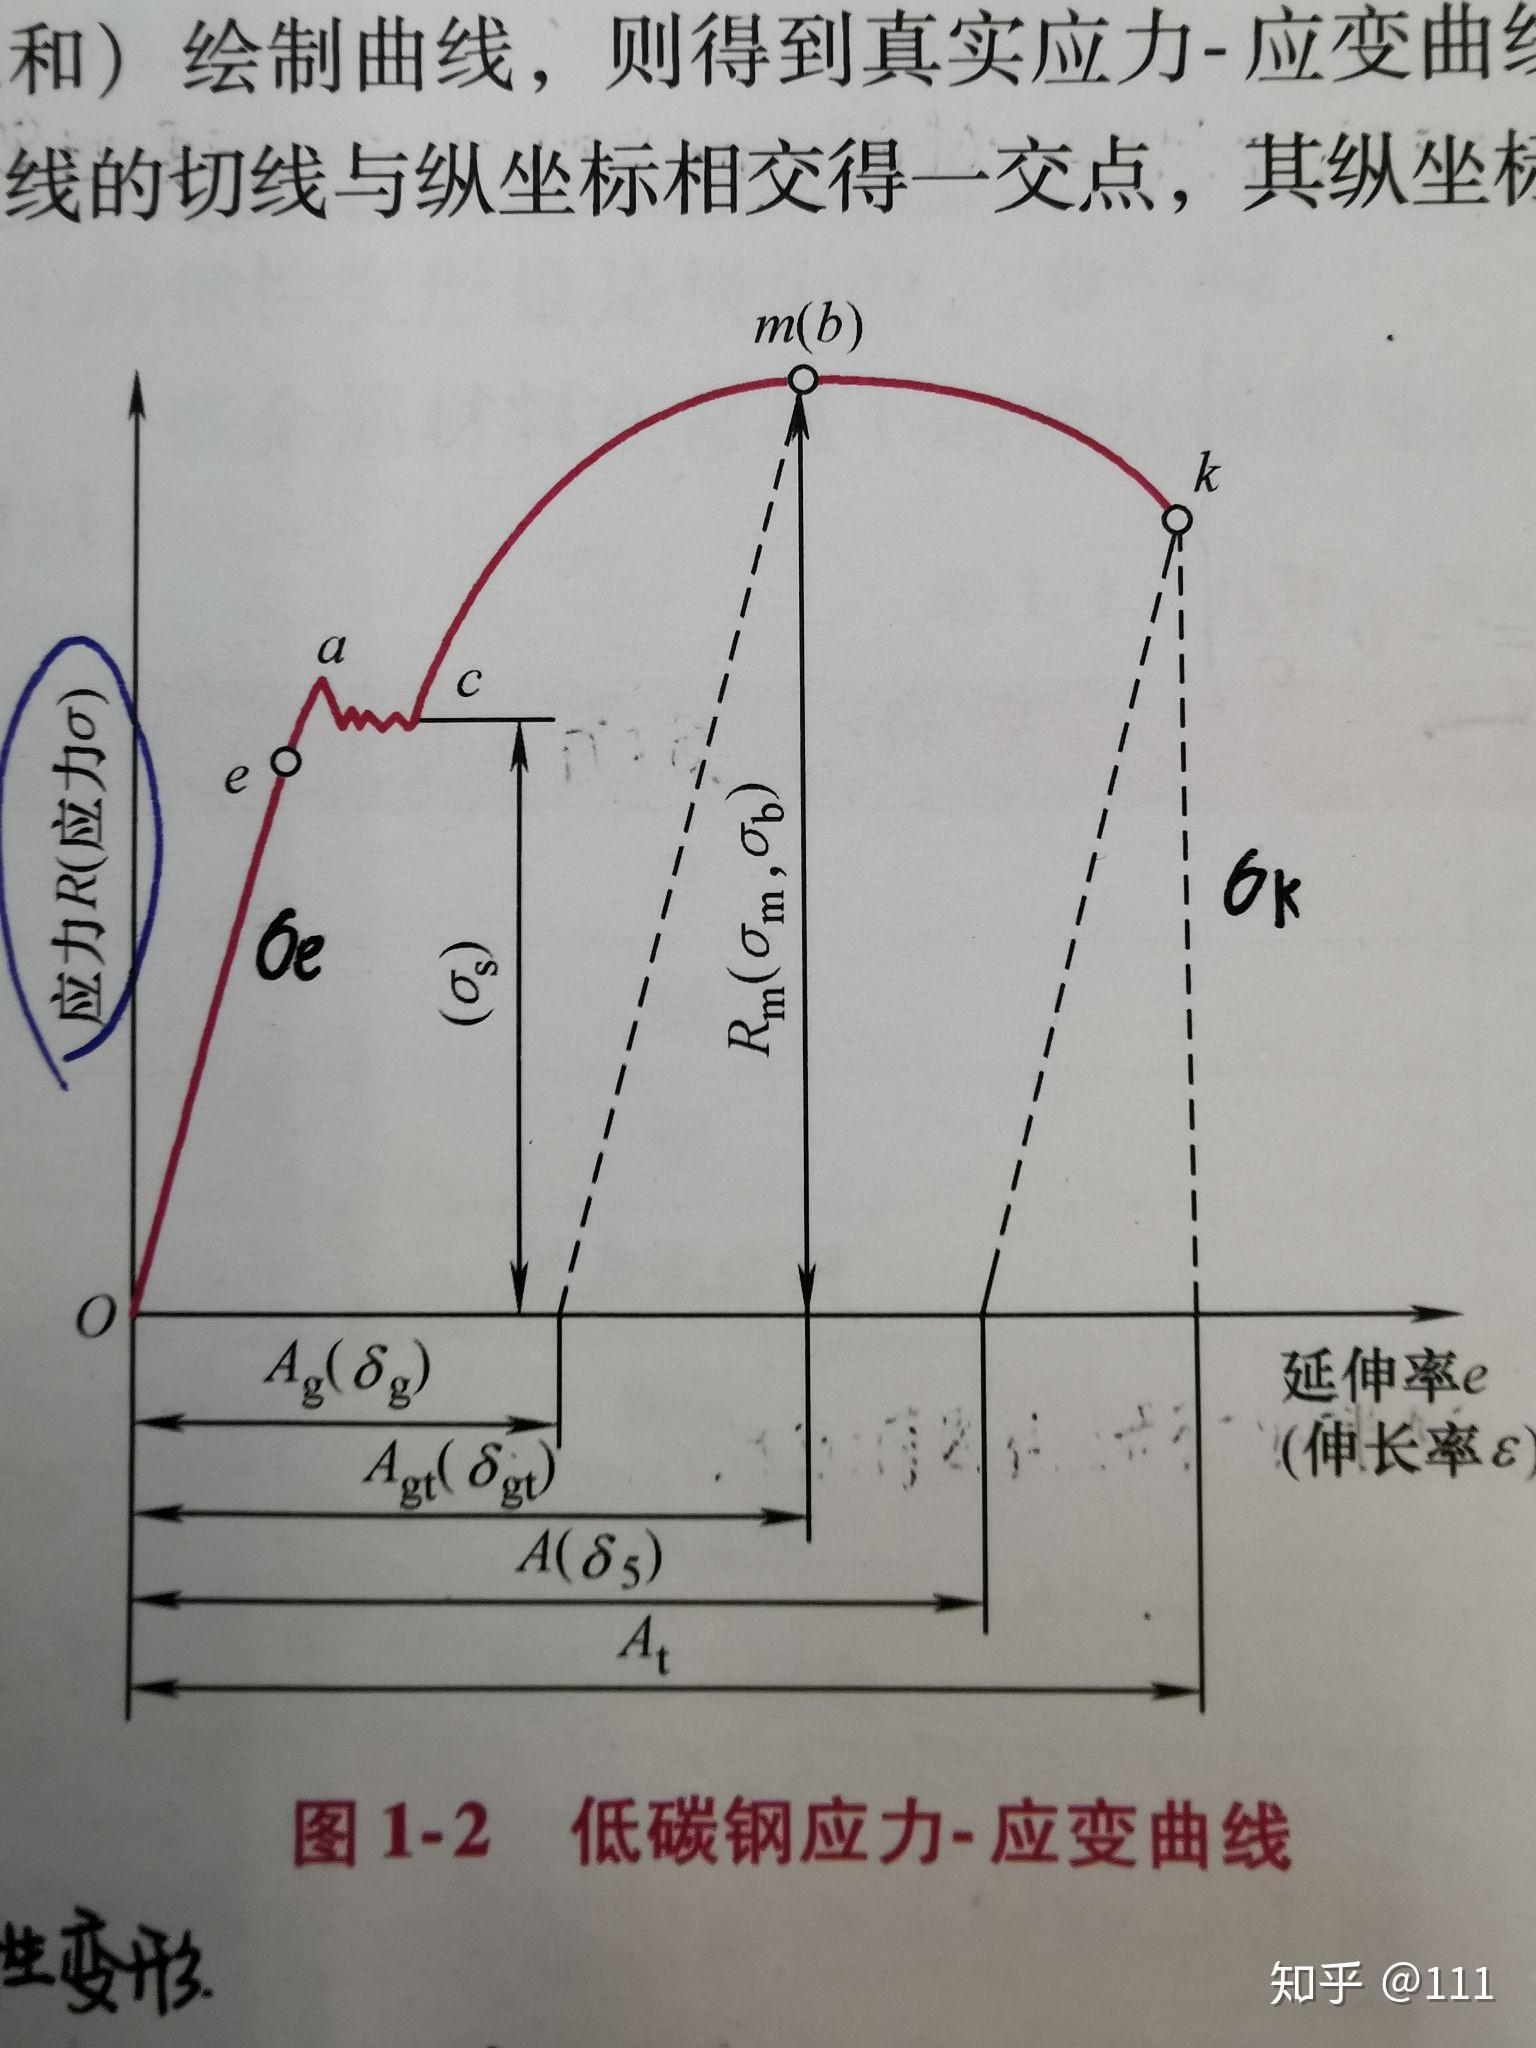 工程应力应变曲线中可以用于表示:当材料发生一定应变时,所收到的应力